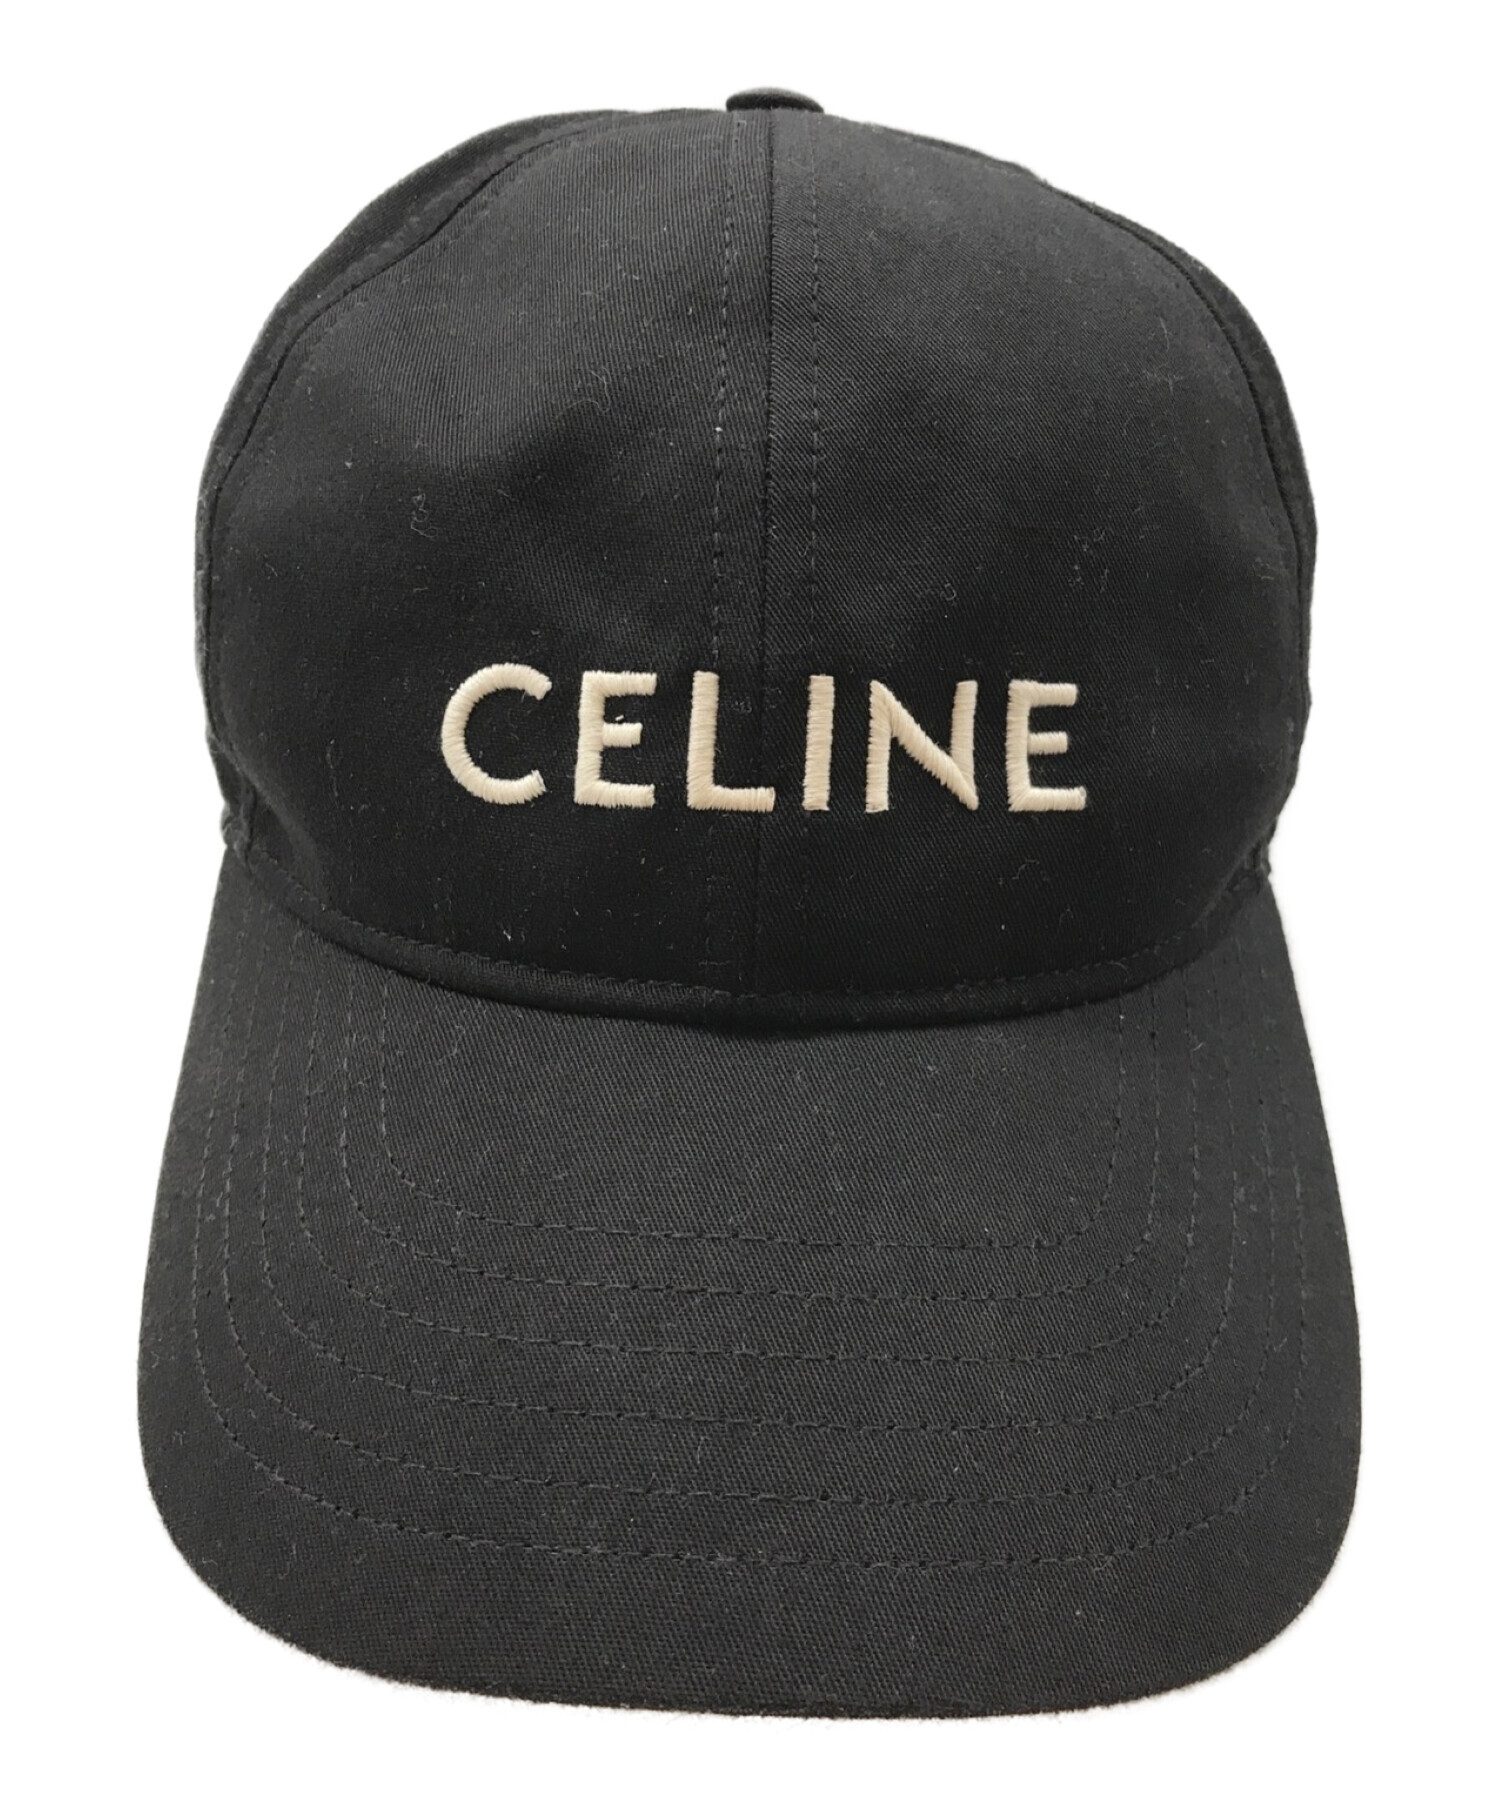 CELINE (セリーヌ) ロゴ刺繍ベースボールキャップ ブラック サイズ:L